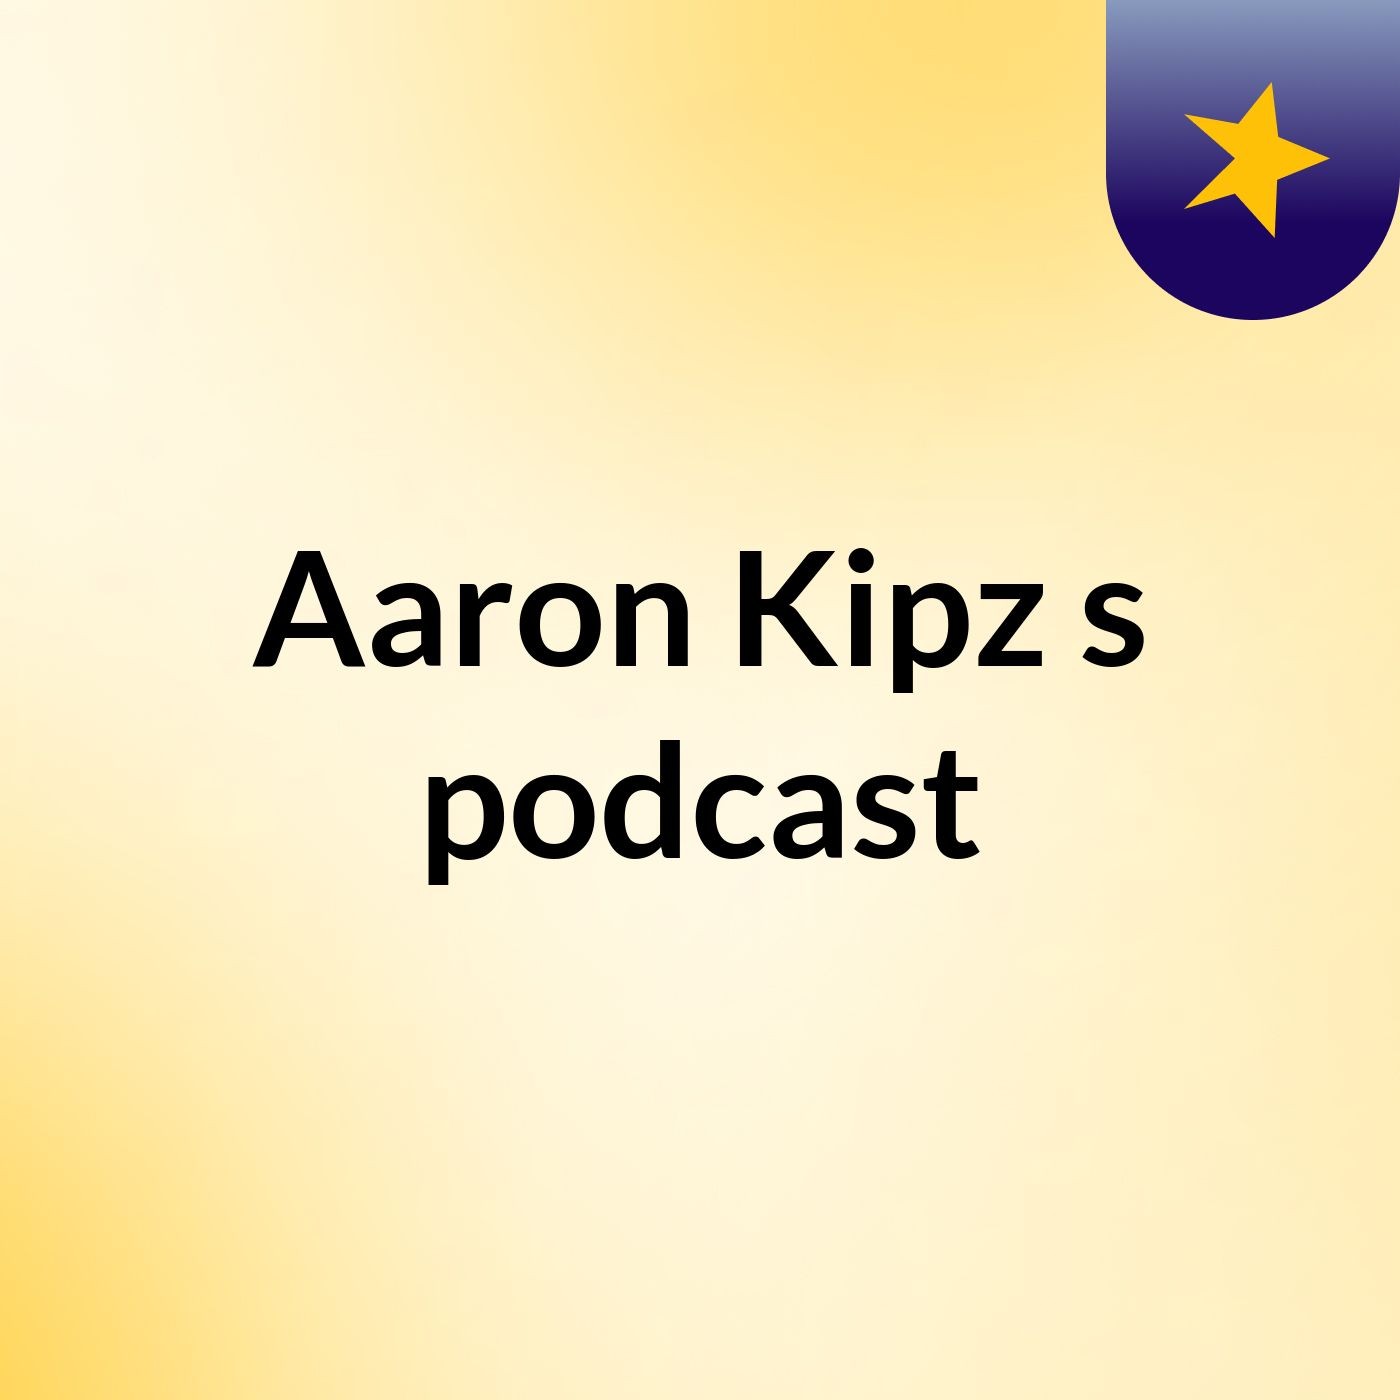 Episode 2 - Aaron Kipz's podcast